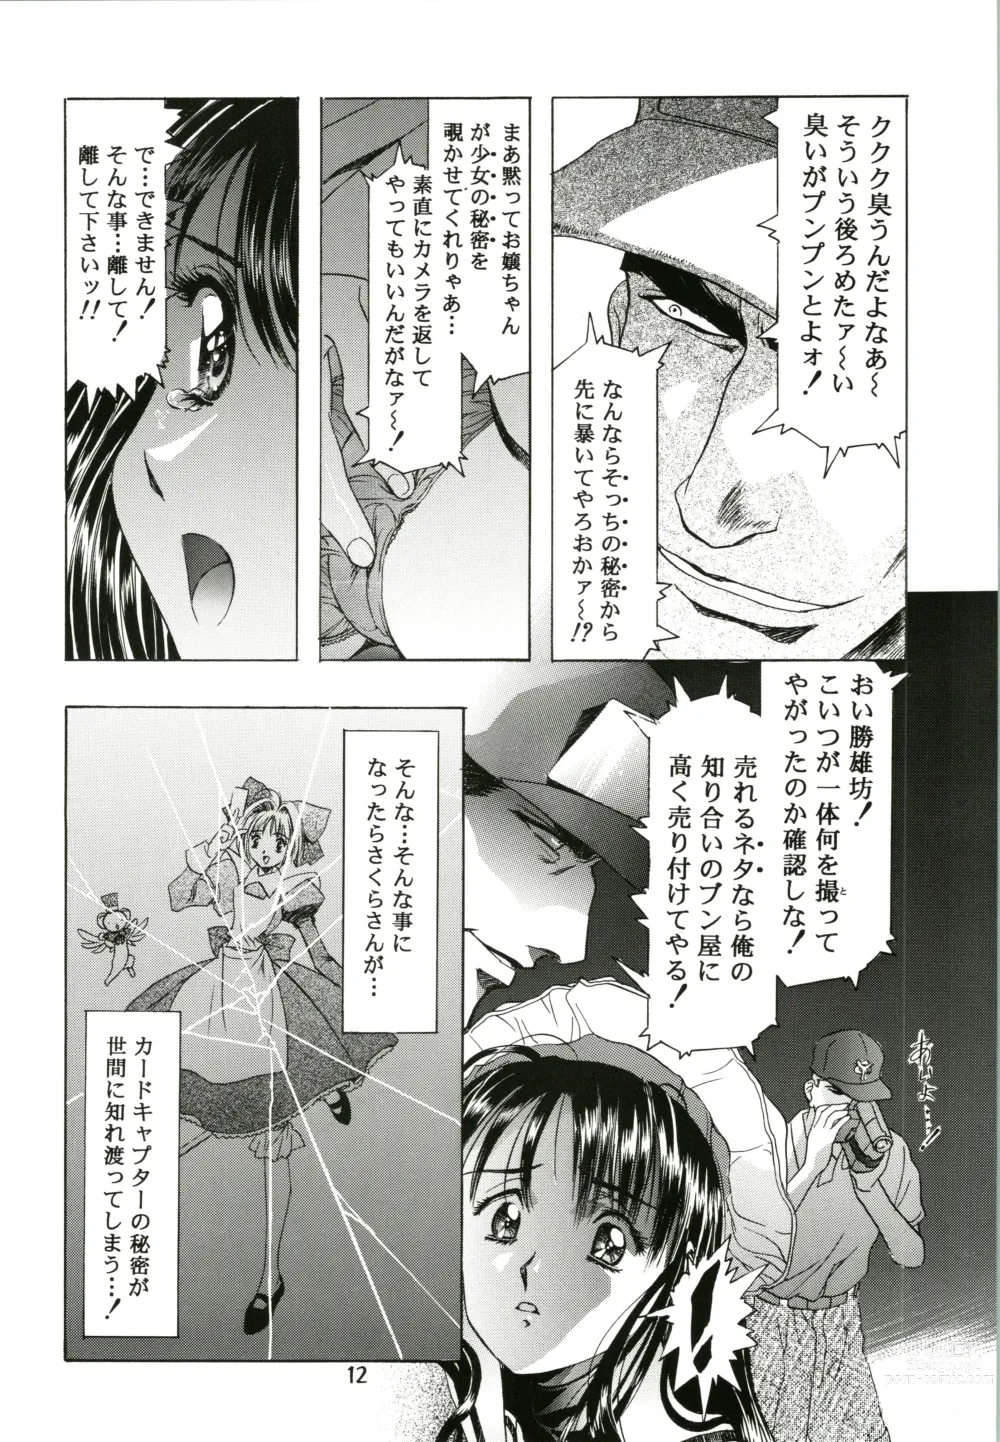 Page 12 of doujinshi Sakura Ame